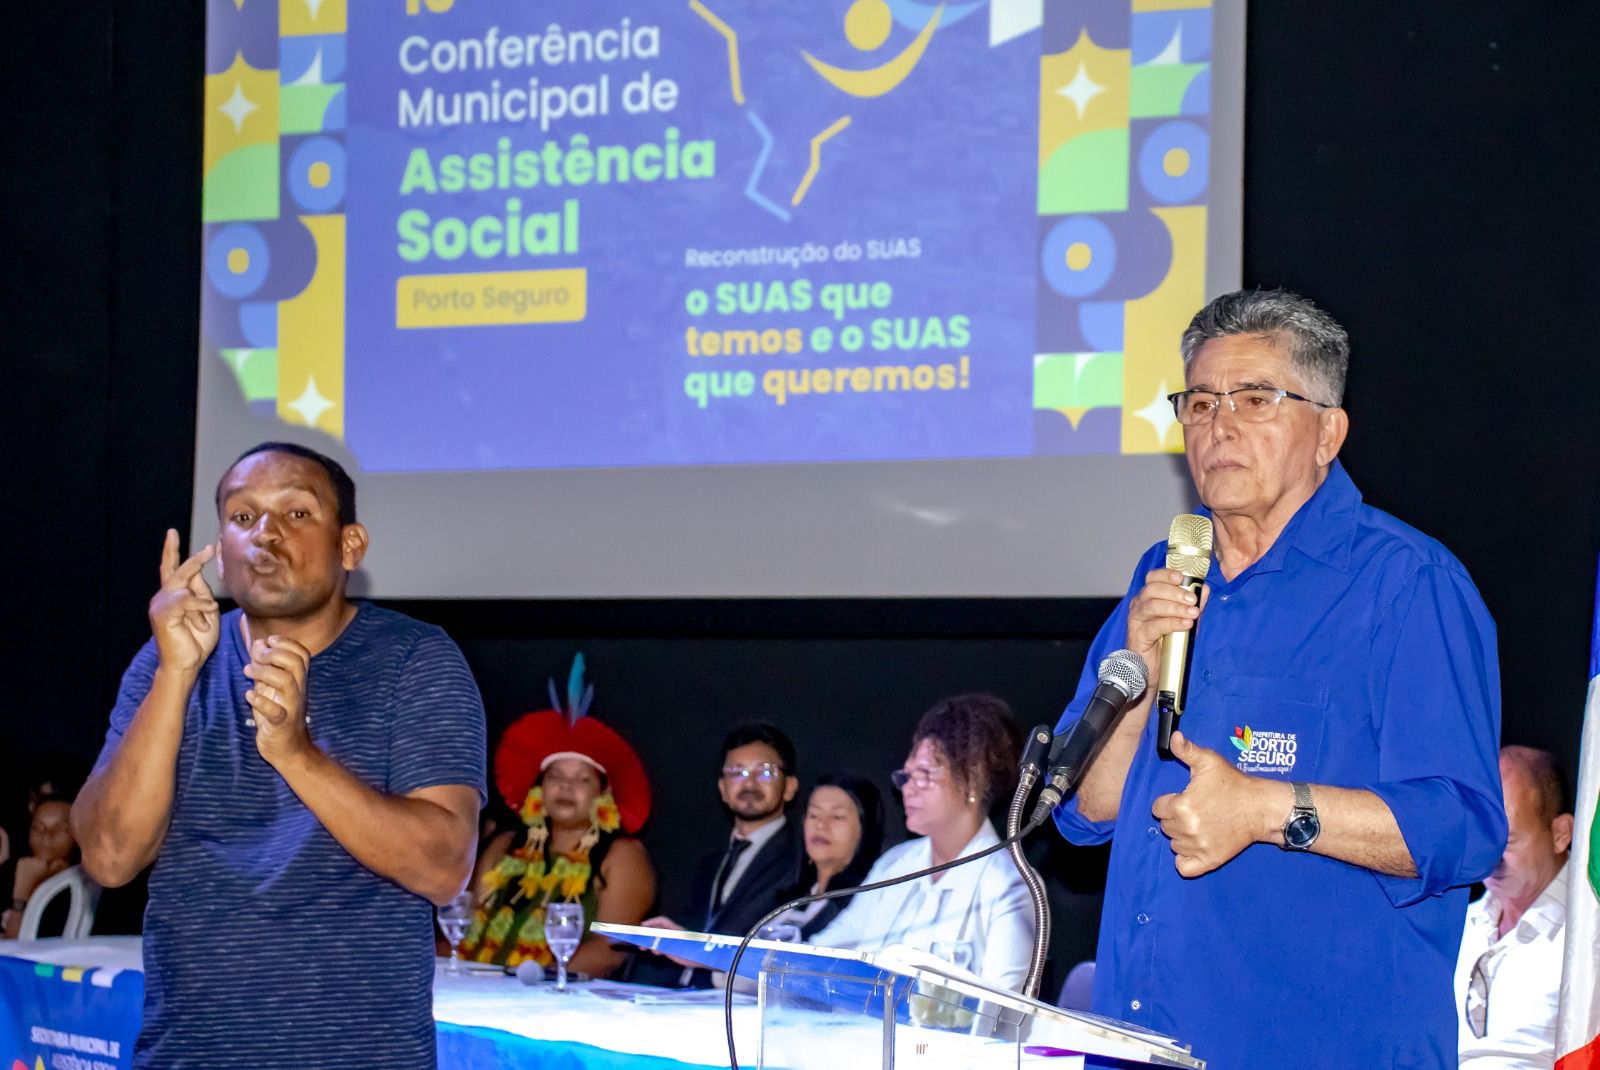 Conferência Municipal de Assistência Social reúne mais de 500 participantes 21